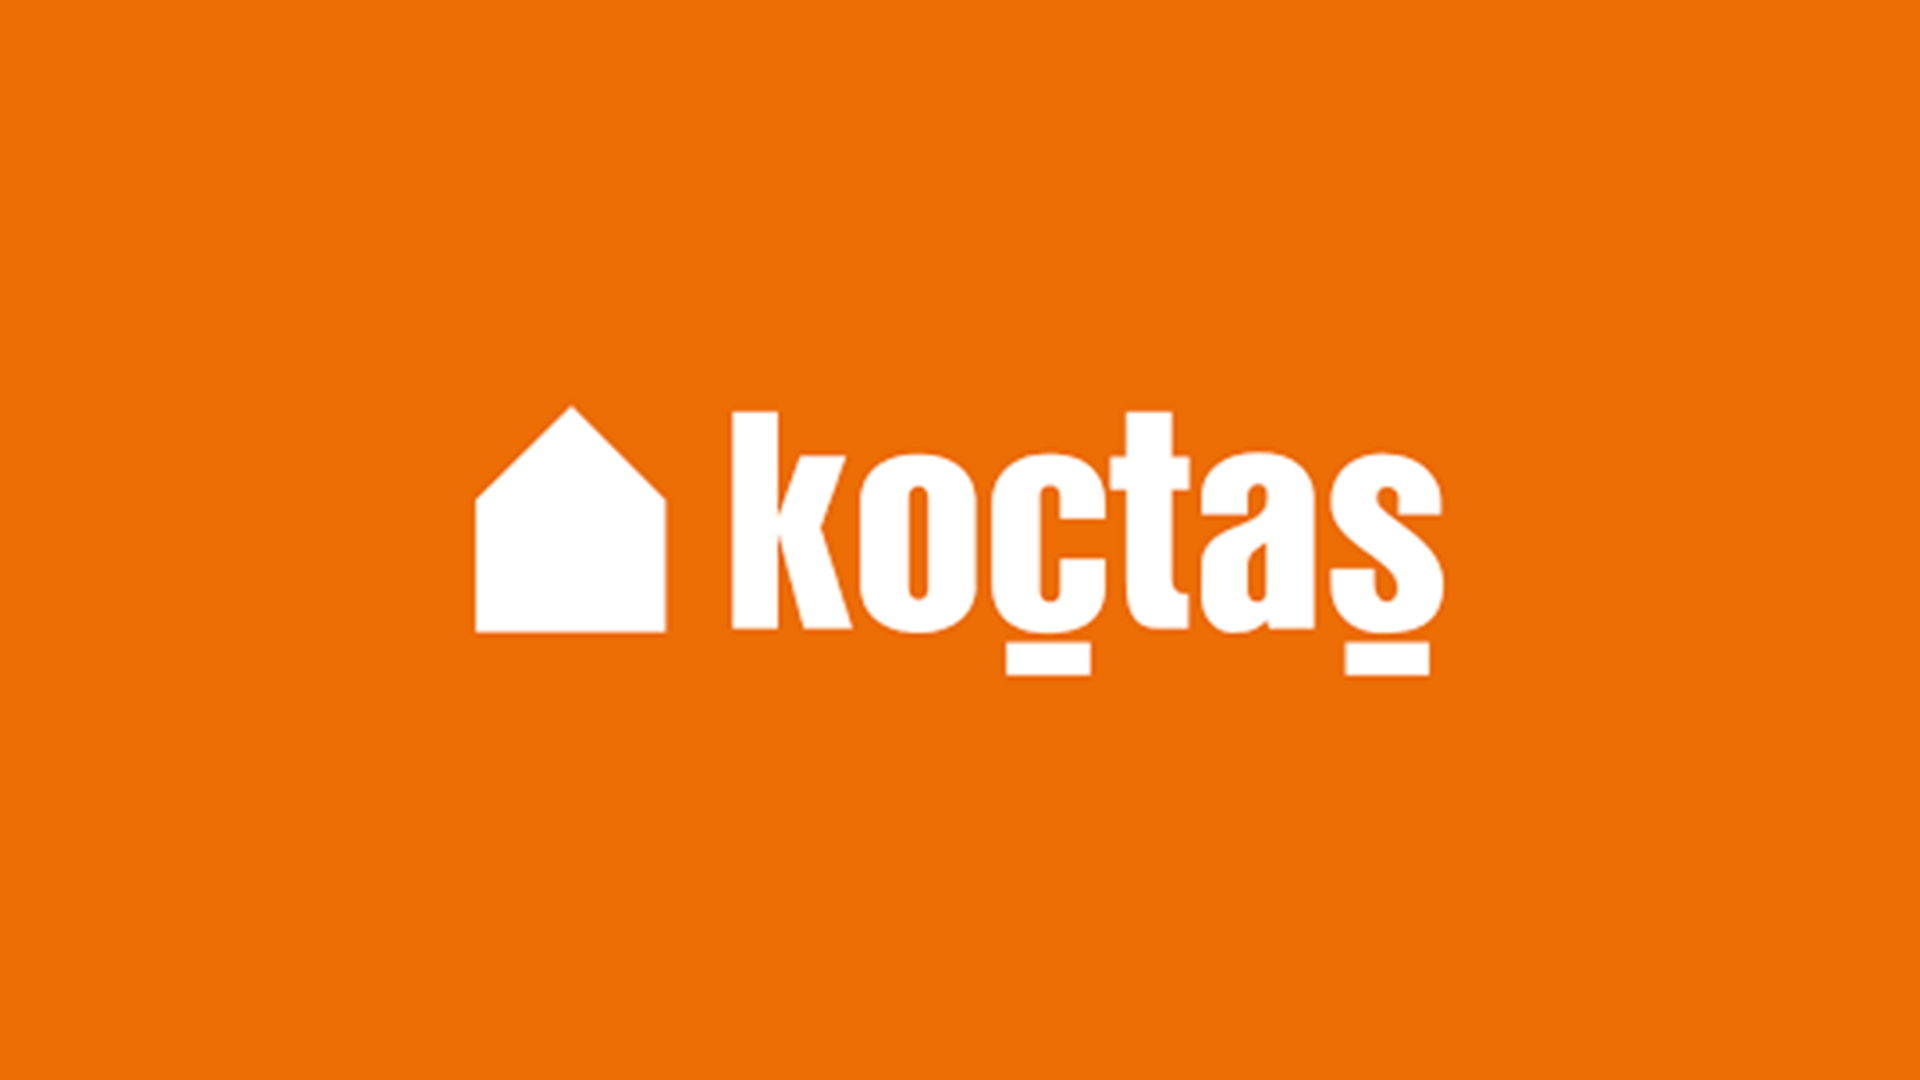 Bilgisayar ekipmanları ve oyuncu koltuklarında koctas.com.tr’ye özel indirimler.